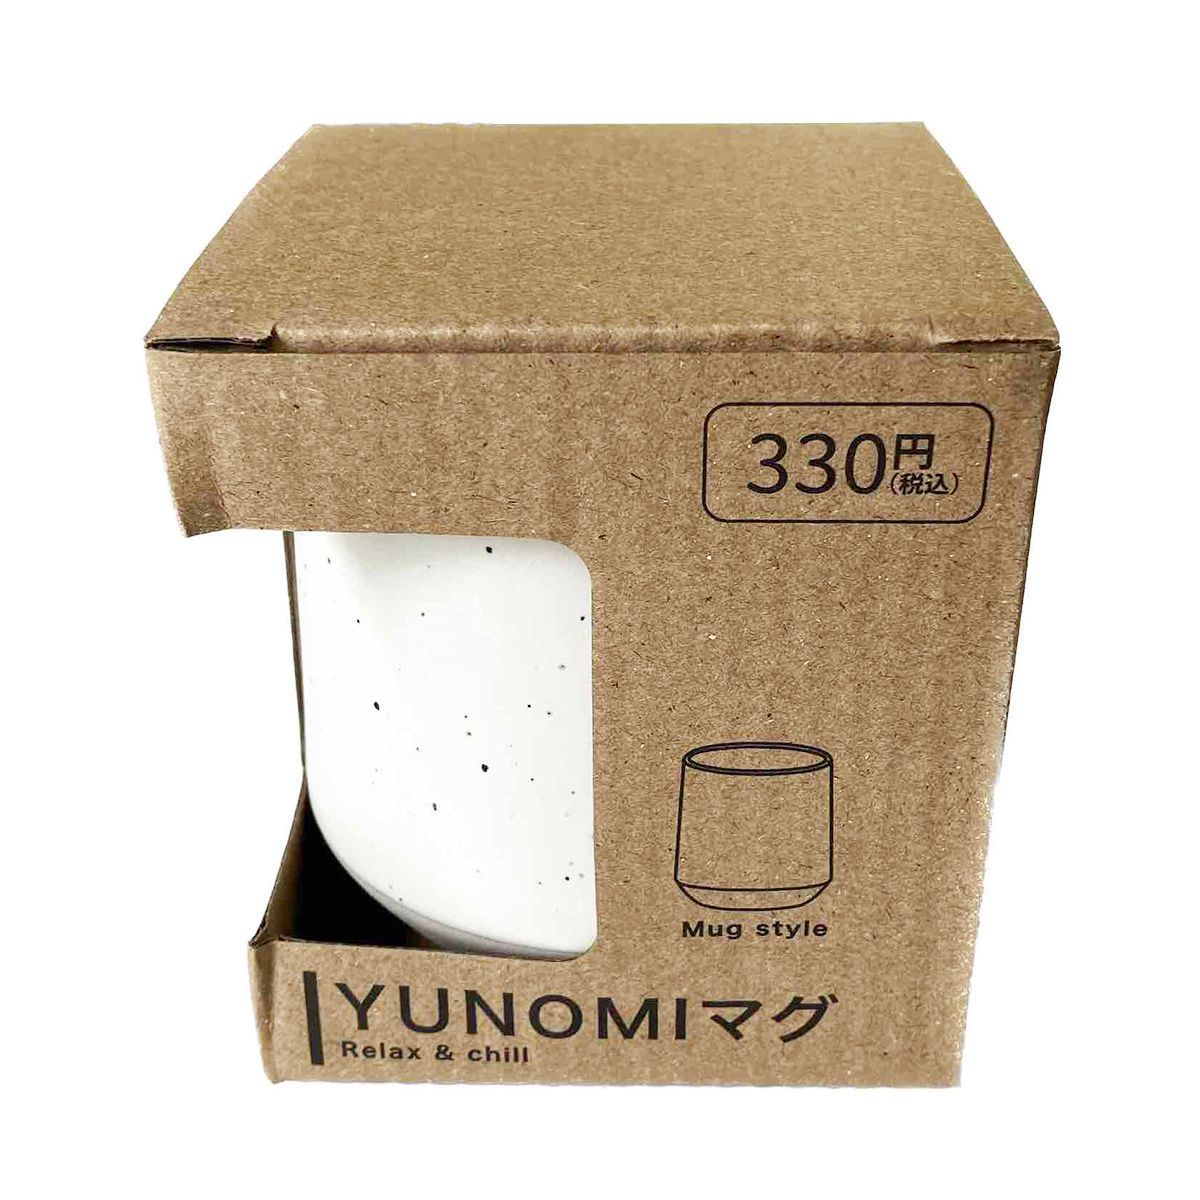 湯呑み マグカップ コップ YUNOMIマグ ホワイト 9001/345686